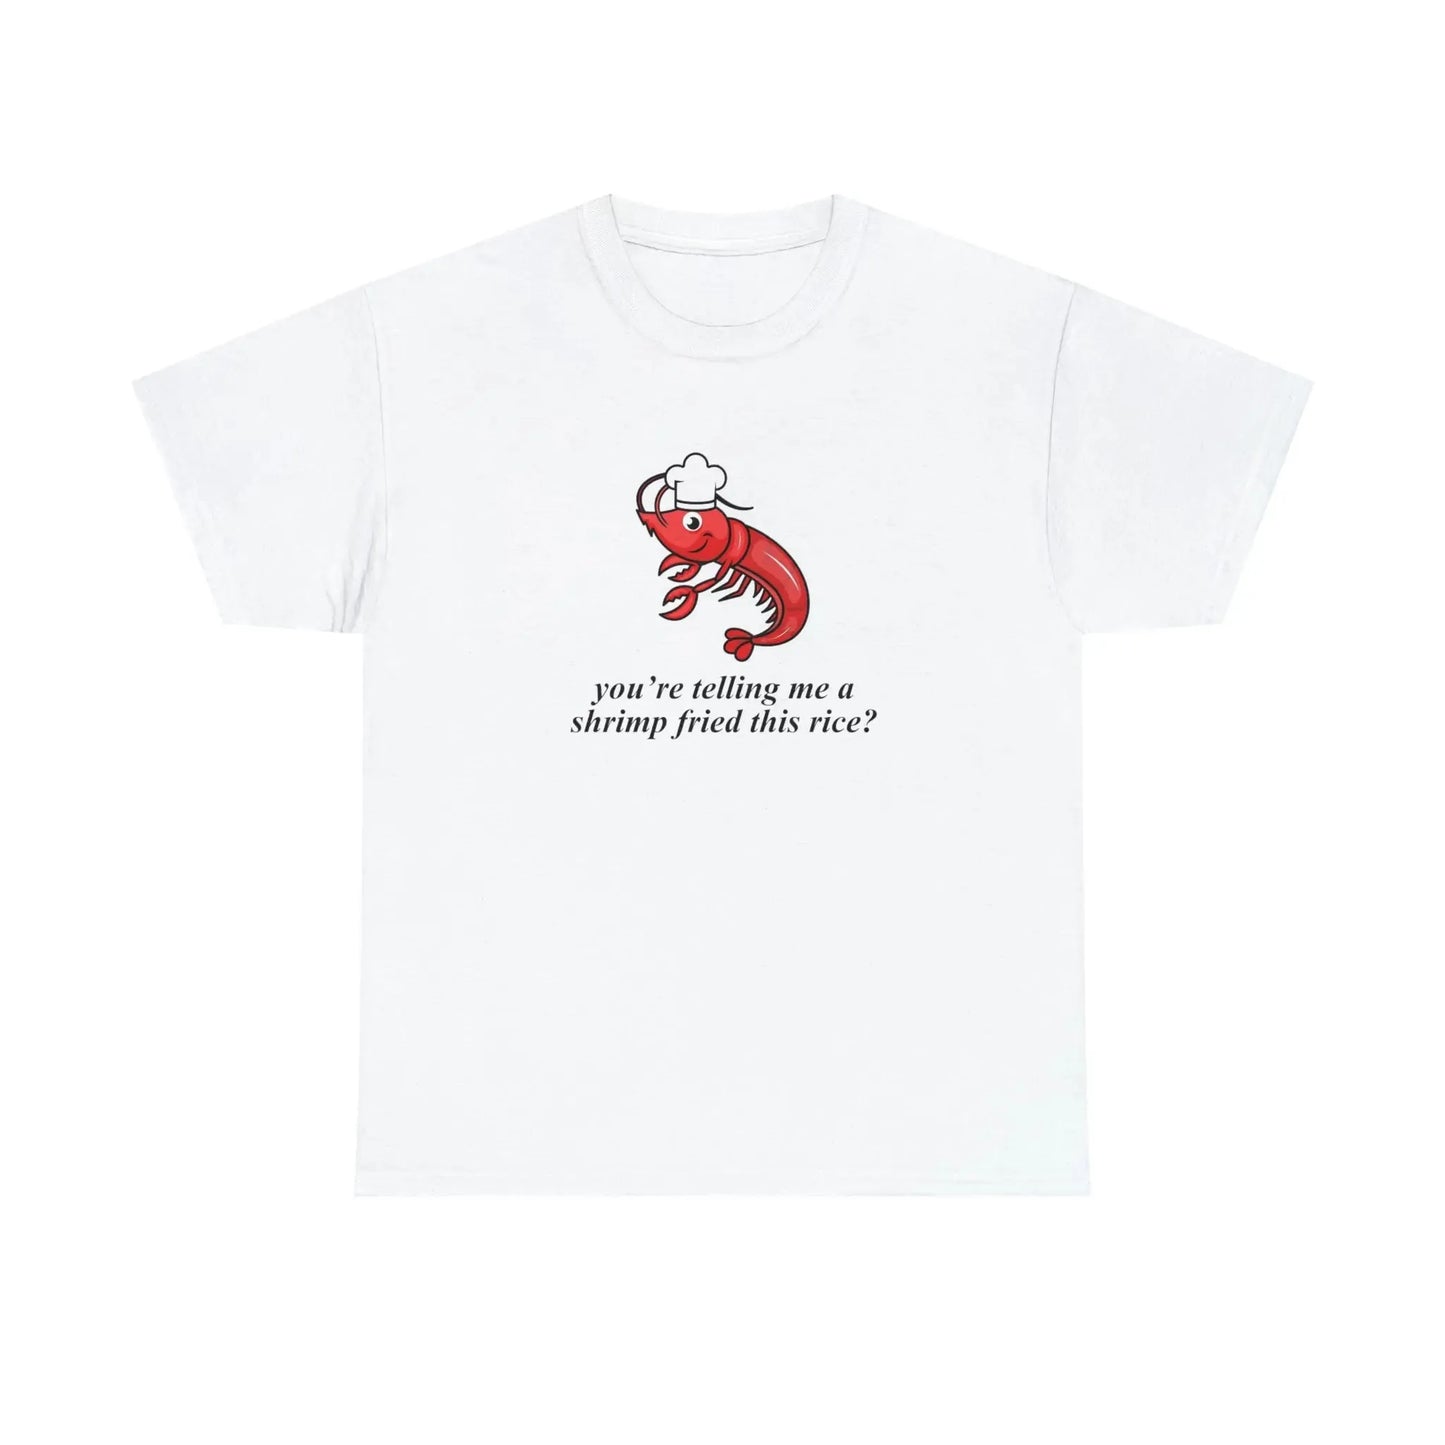 A Shrimp Fried This Rice T-Shirt - Failure International failureinternational.com store brand tiktok instagram